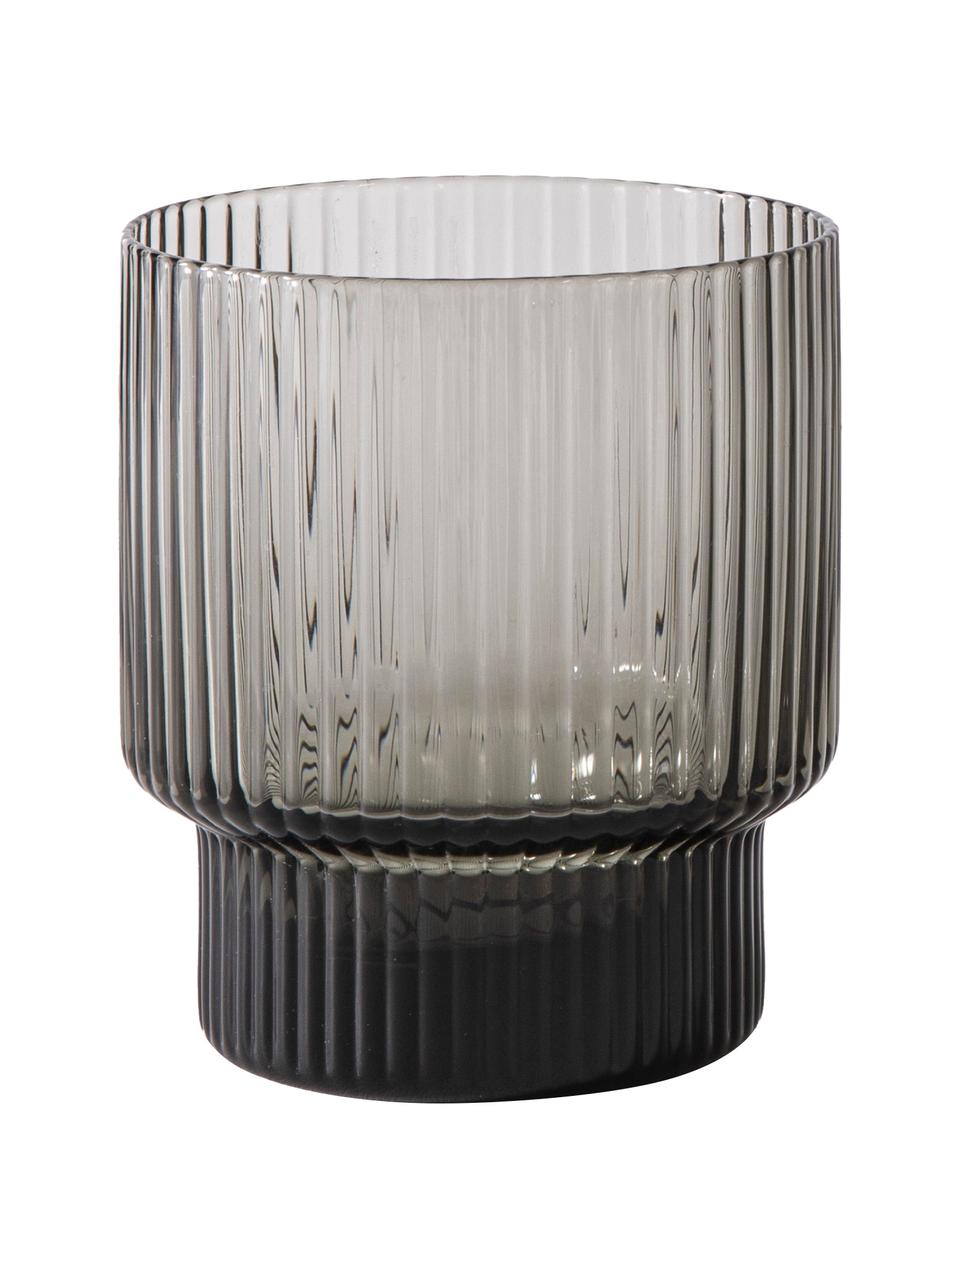 Bicchiere acqua in vetro soffiato rigato Erskine 4 pz, Vetro soffiato, Grigio, Ø 8 x Alt. 10 cm, 350 ml